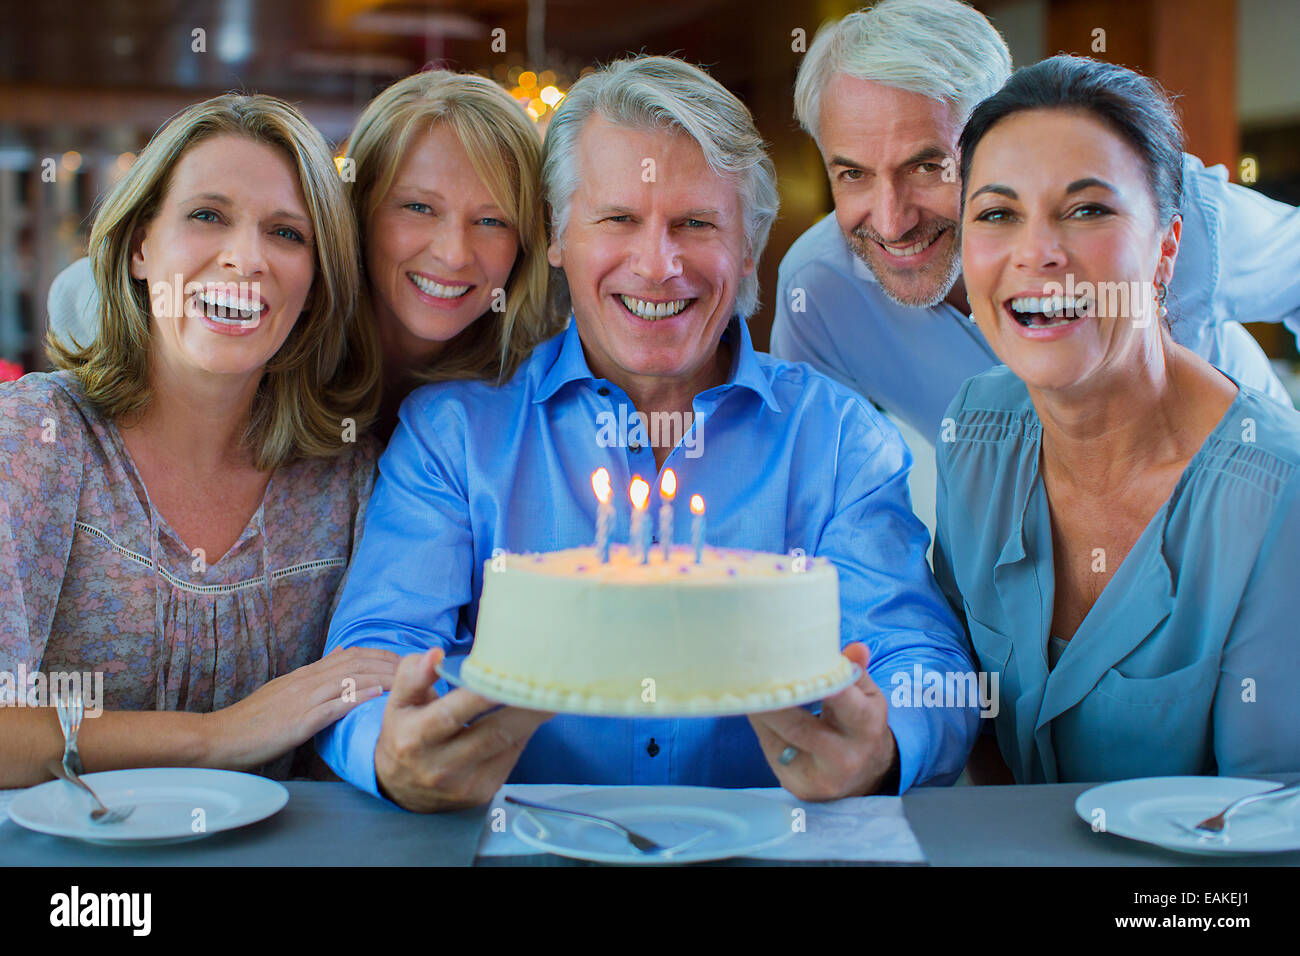 Porträt des Lächelns, reife Männer und Frauen mit Geburtstagstorte Stockfoto